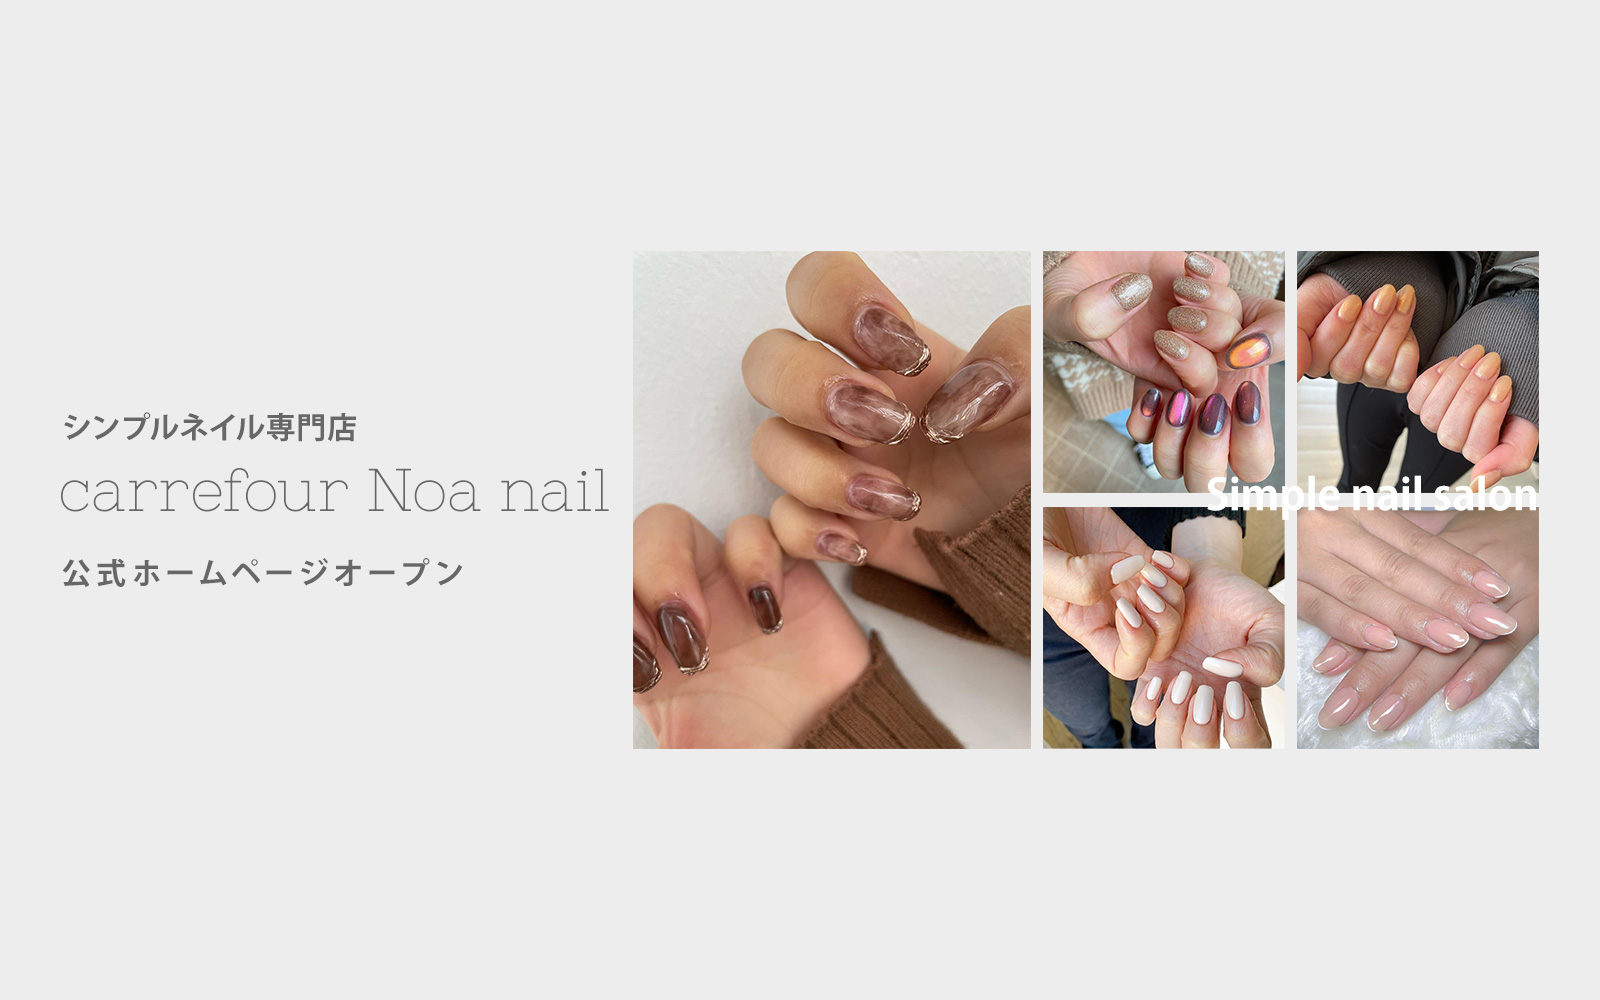 シンプルネイル専門店carrefour Noa nail公式サイトオープン